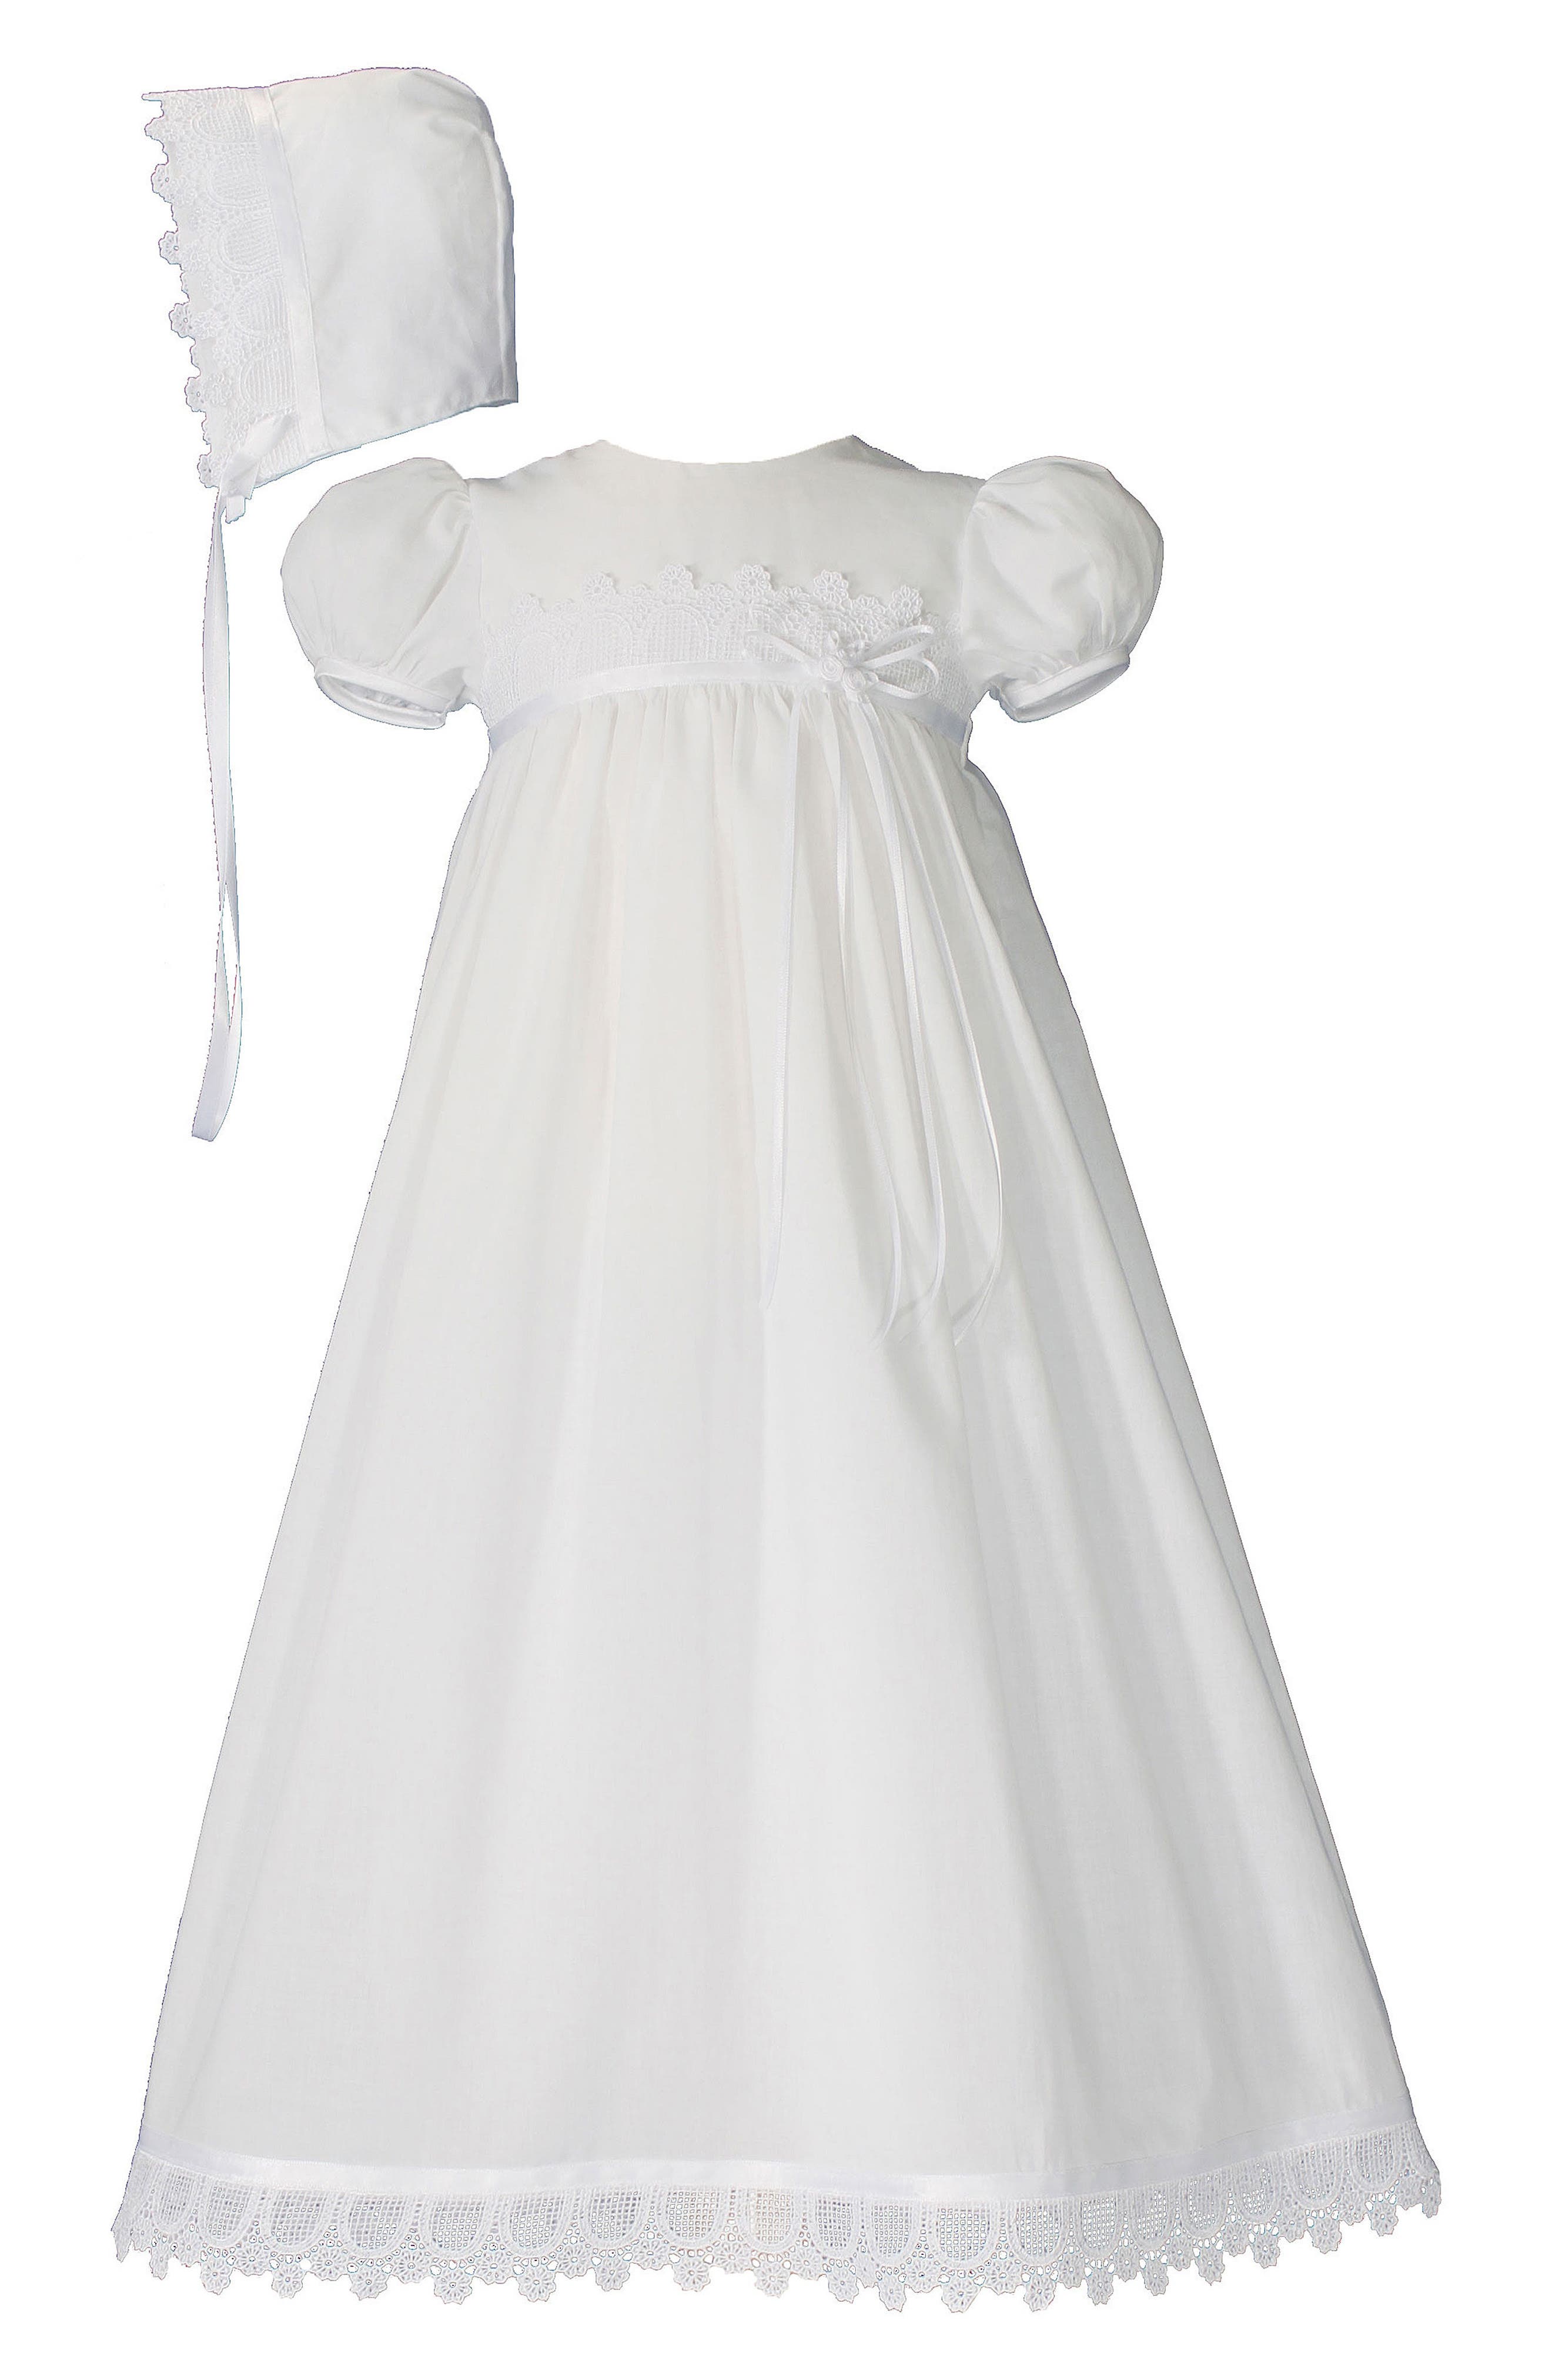 white dresses for baby girl